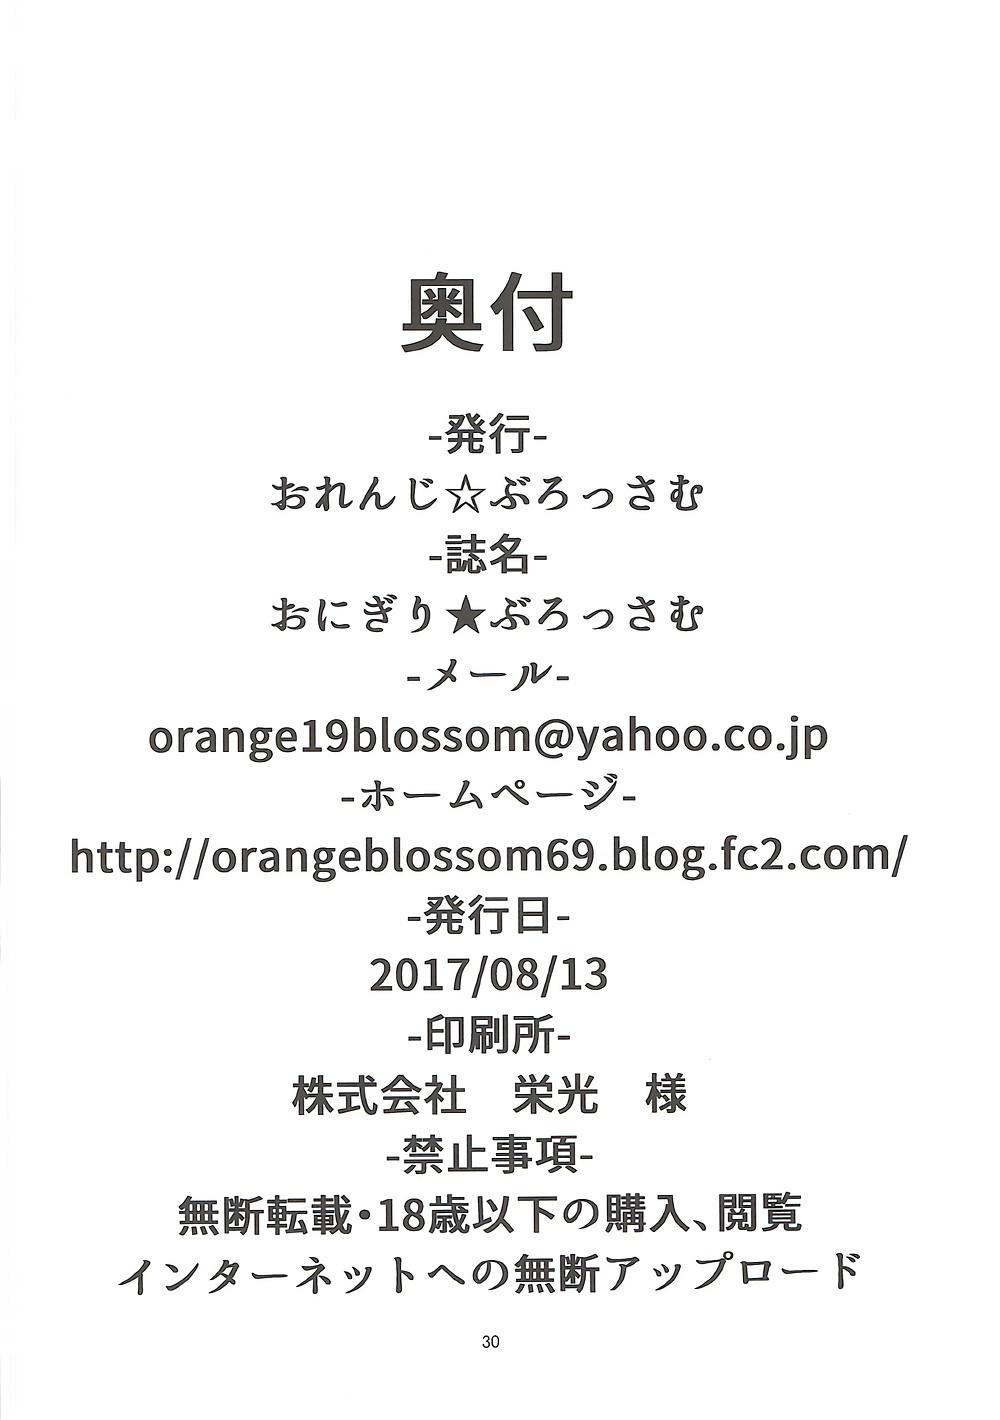 Onigiri Blossom 30